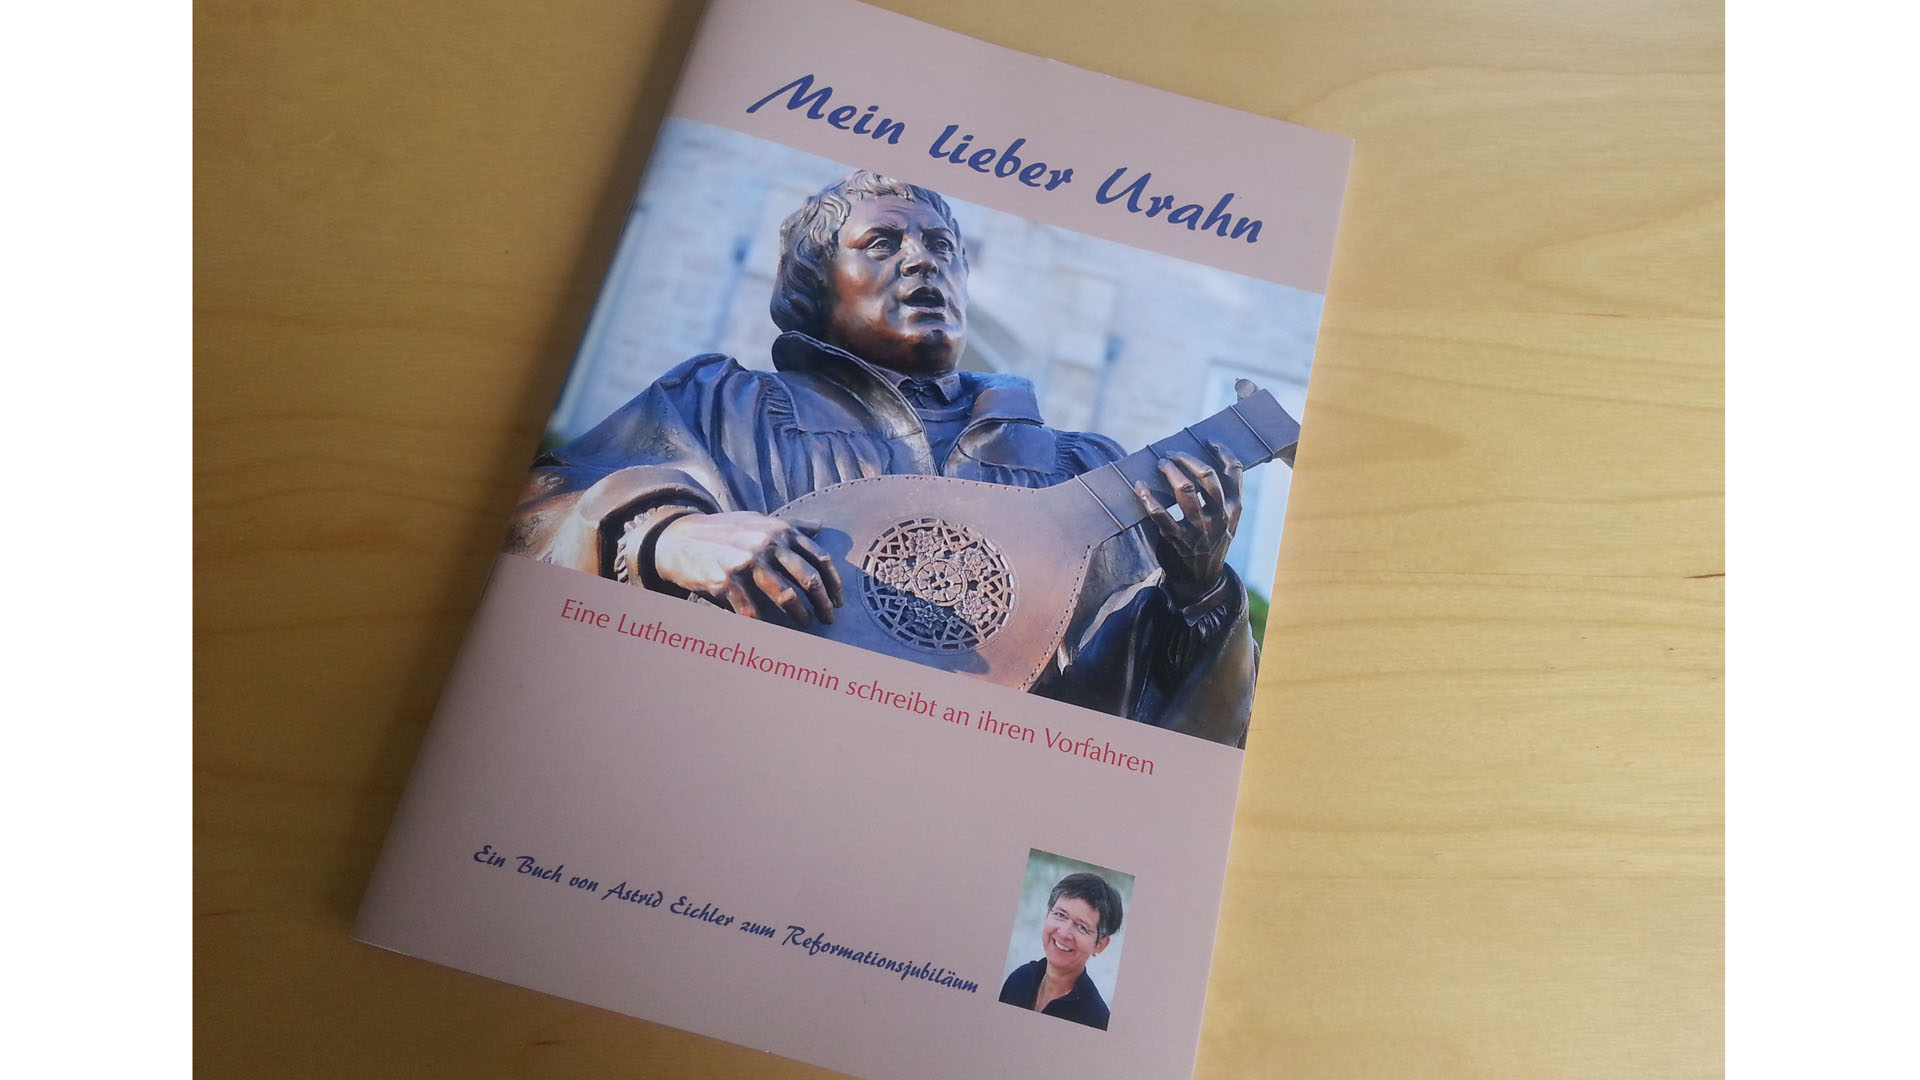 Astrid Eichler hat zum Reformationsjubiläum ein Büchlein mit dem Titel „Mein lieber Urahn“ in einer begrenzten Auflage veröffentlicht. Darin schreibt sie Briefe an ihren Vorfahren.